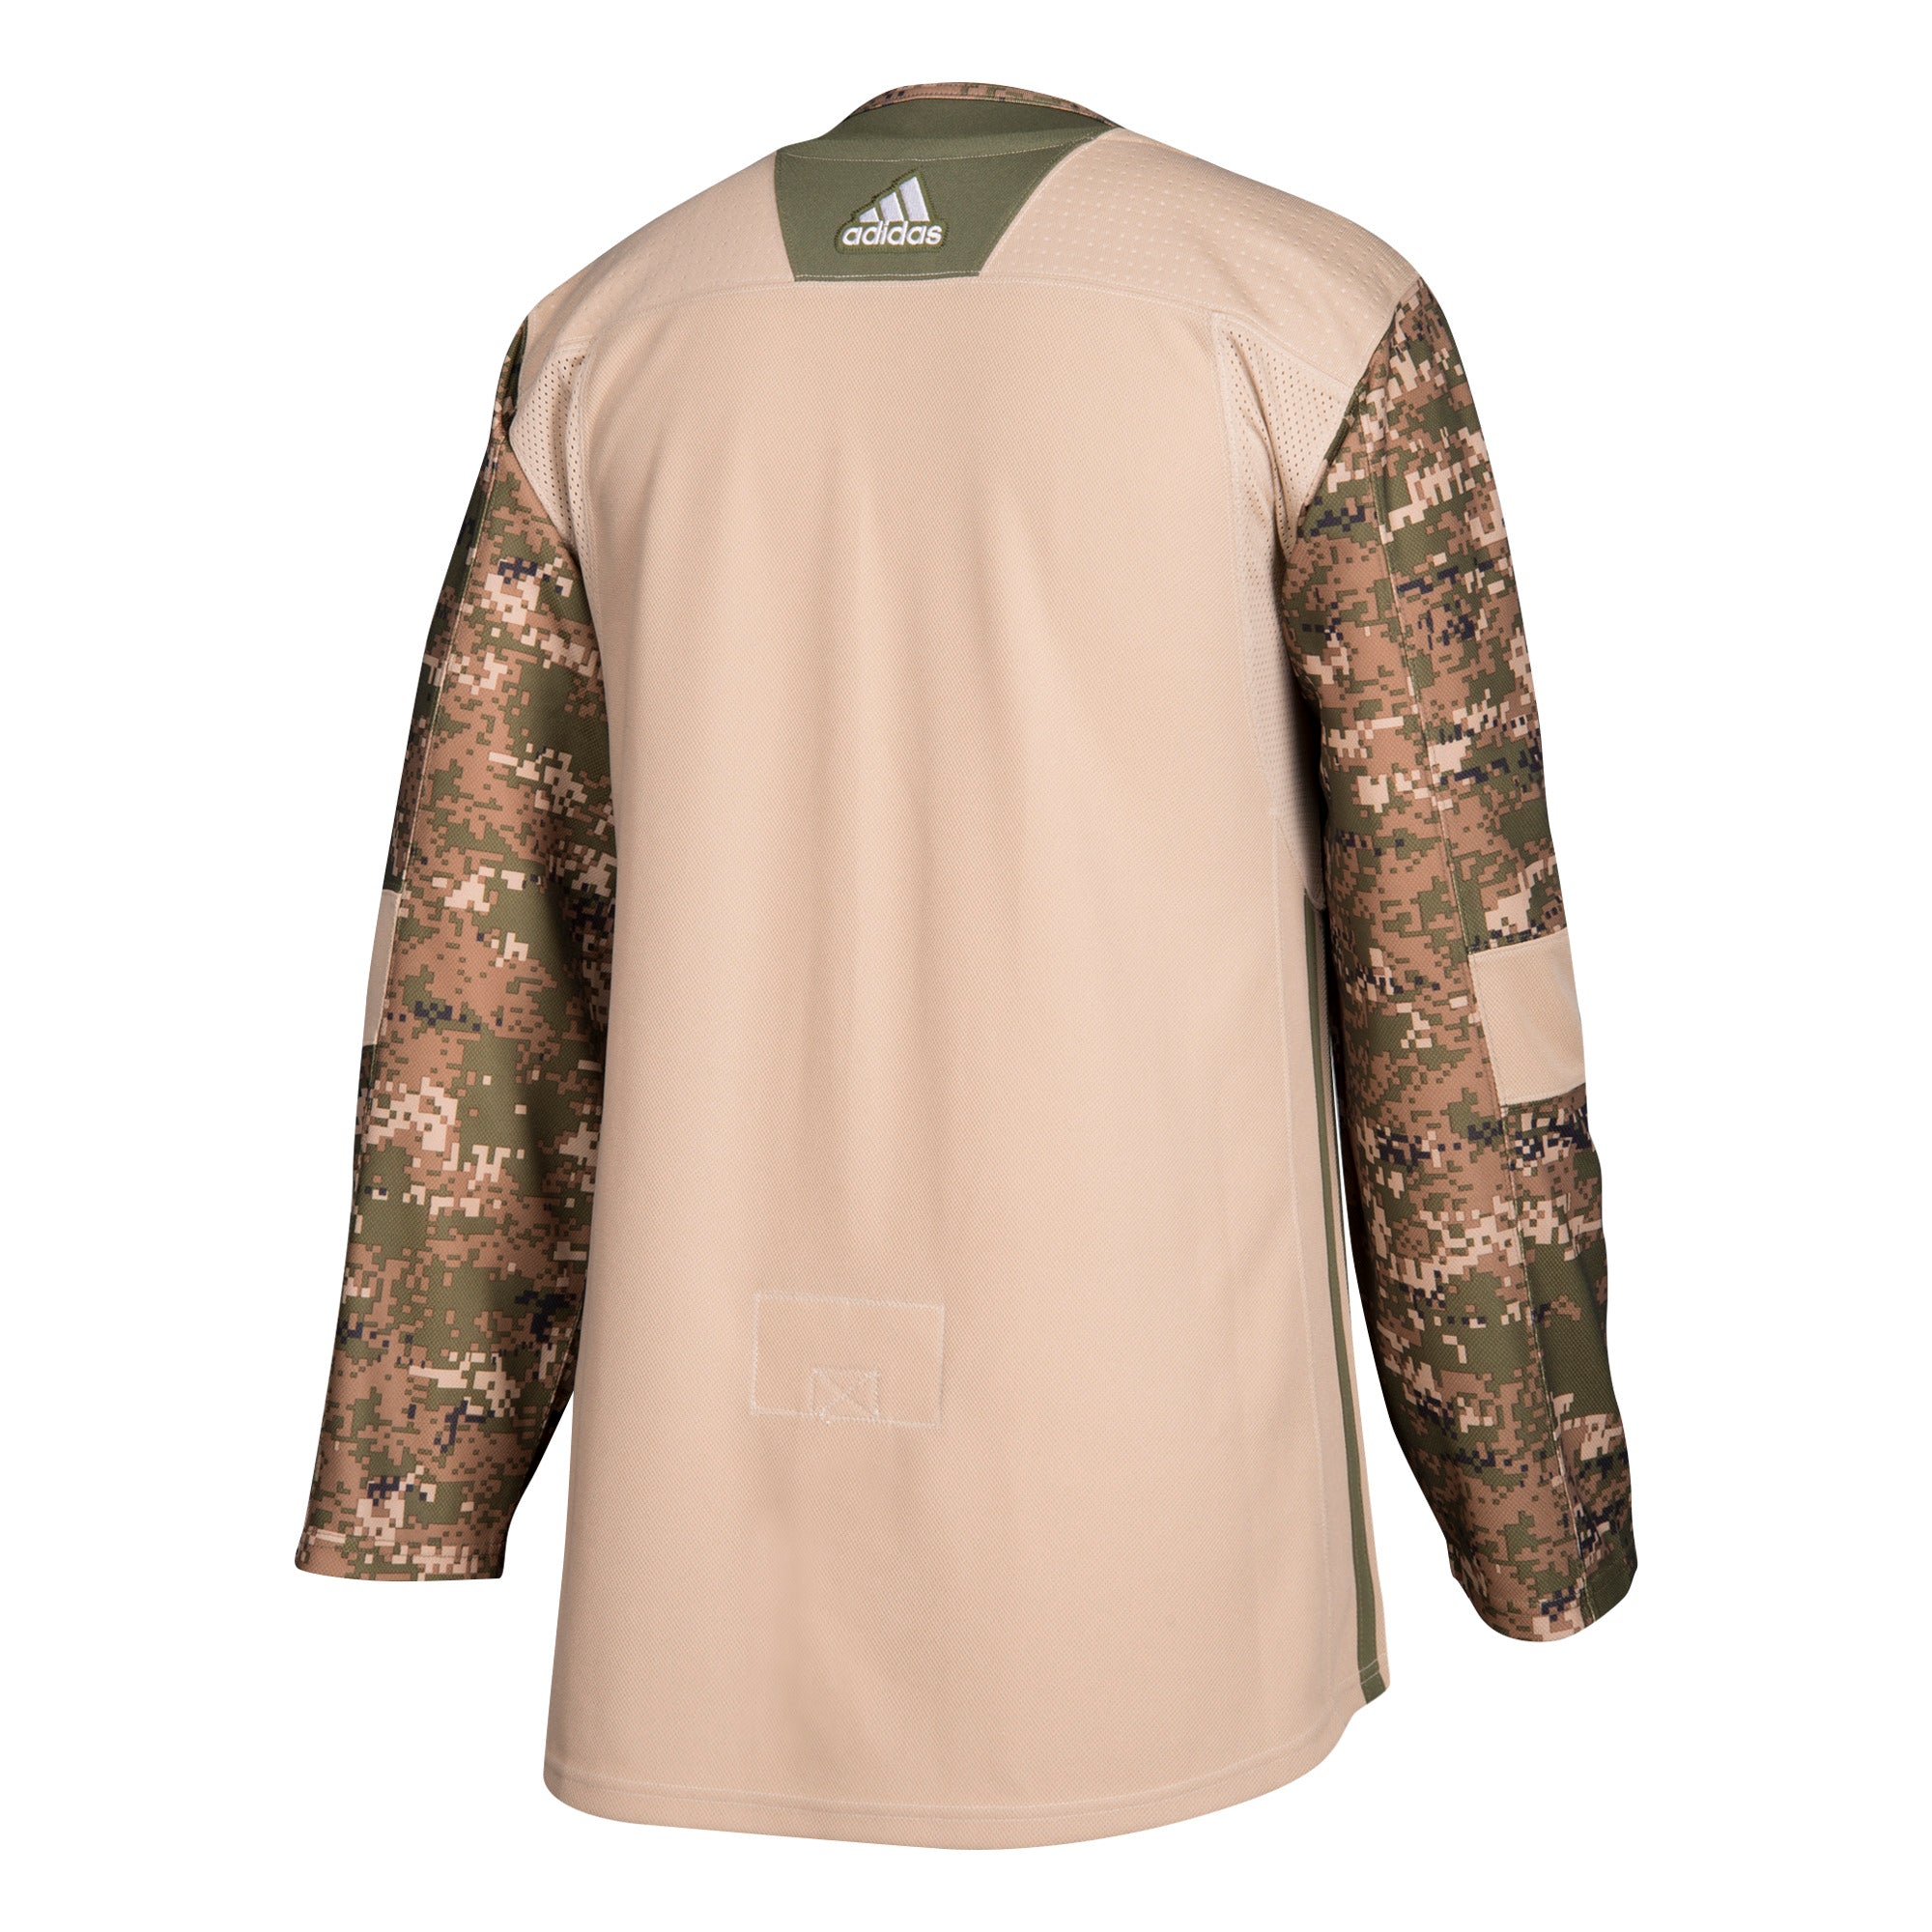 florida panthers military jersey